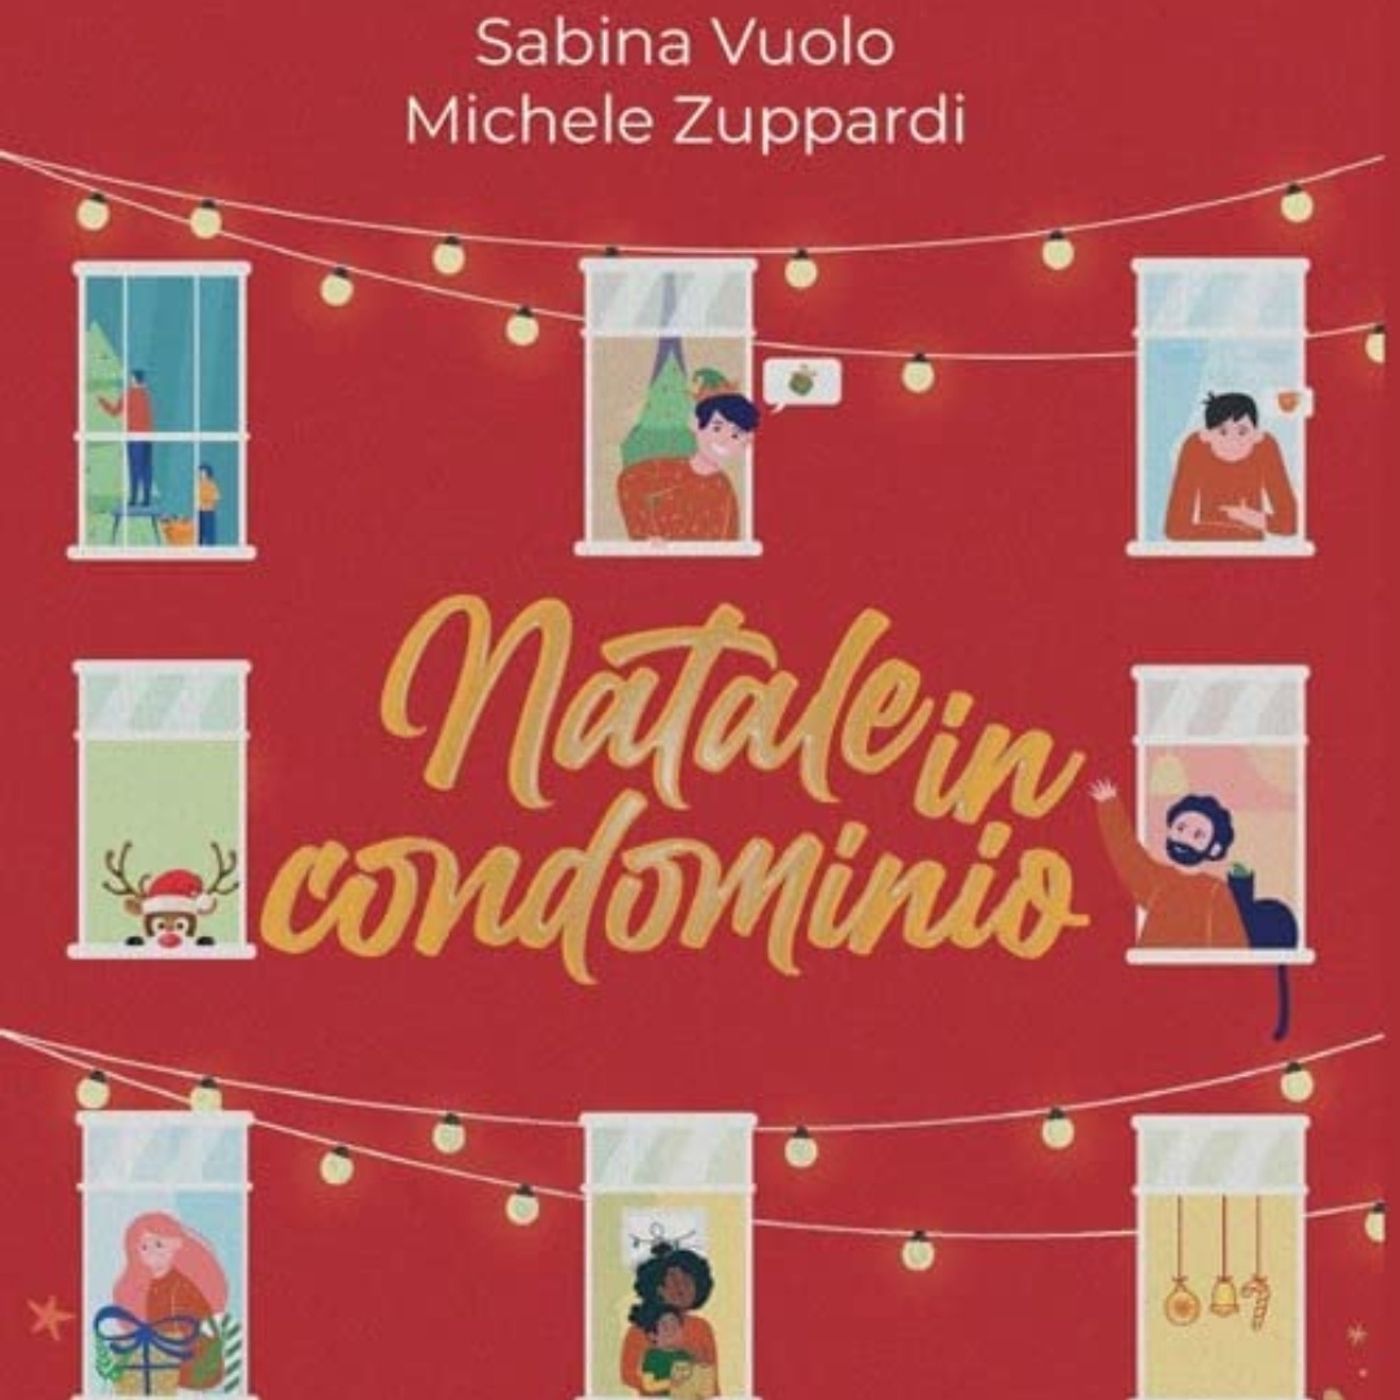 Natale in condominio di Sabina Vuolo e Michele Zuppardi